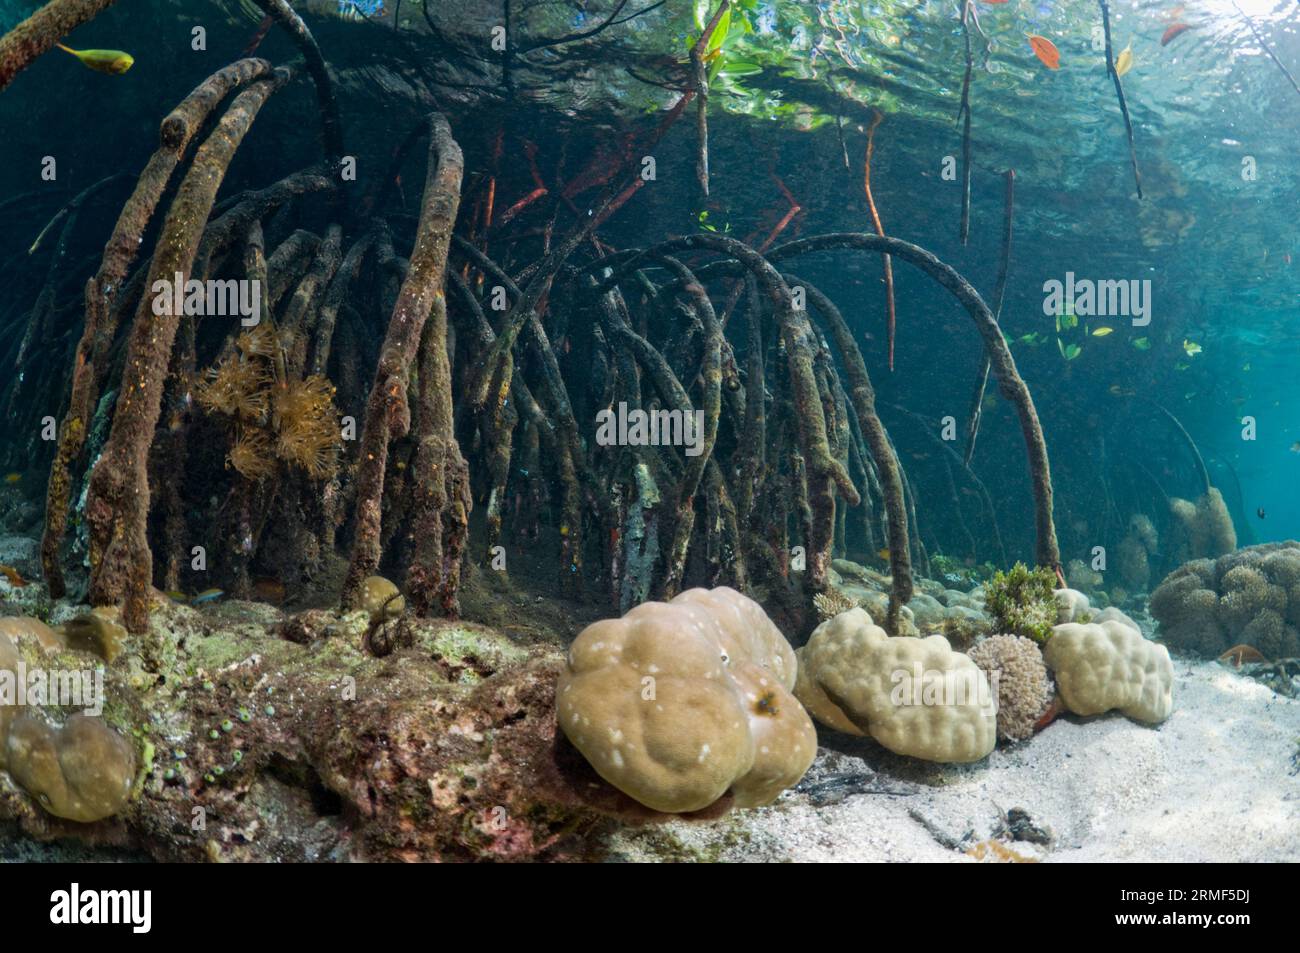 Raíces de manglar (Rhizophora sp.) en el borde del arrecife de coral. Invertebrados que crecen debajo y en las raíces. Raja Ampat, Indonesia. Foto de stock